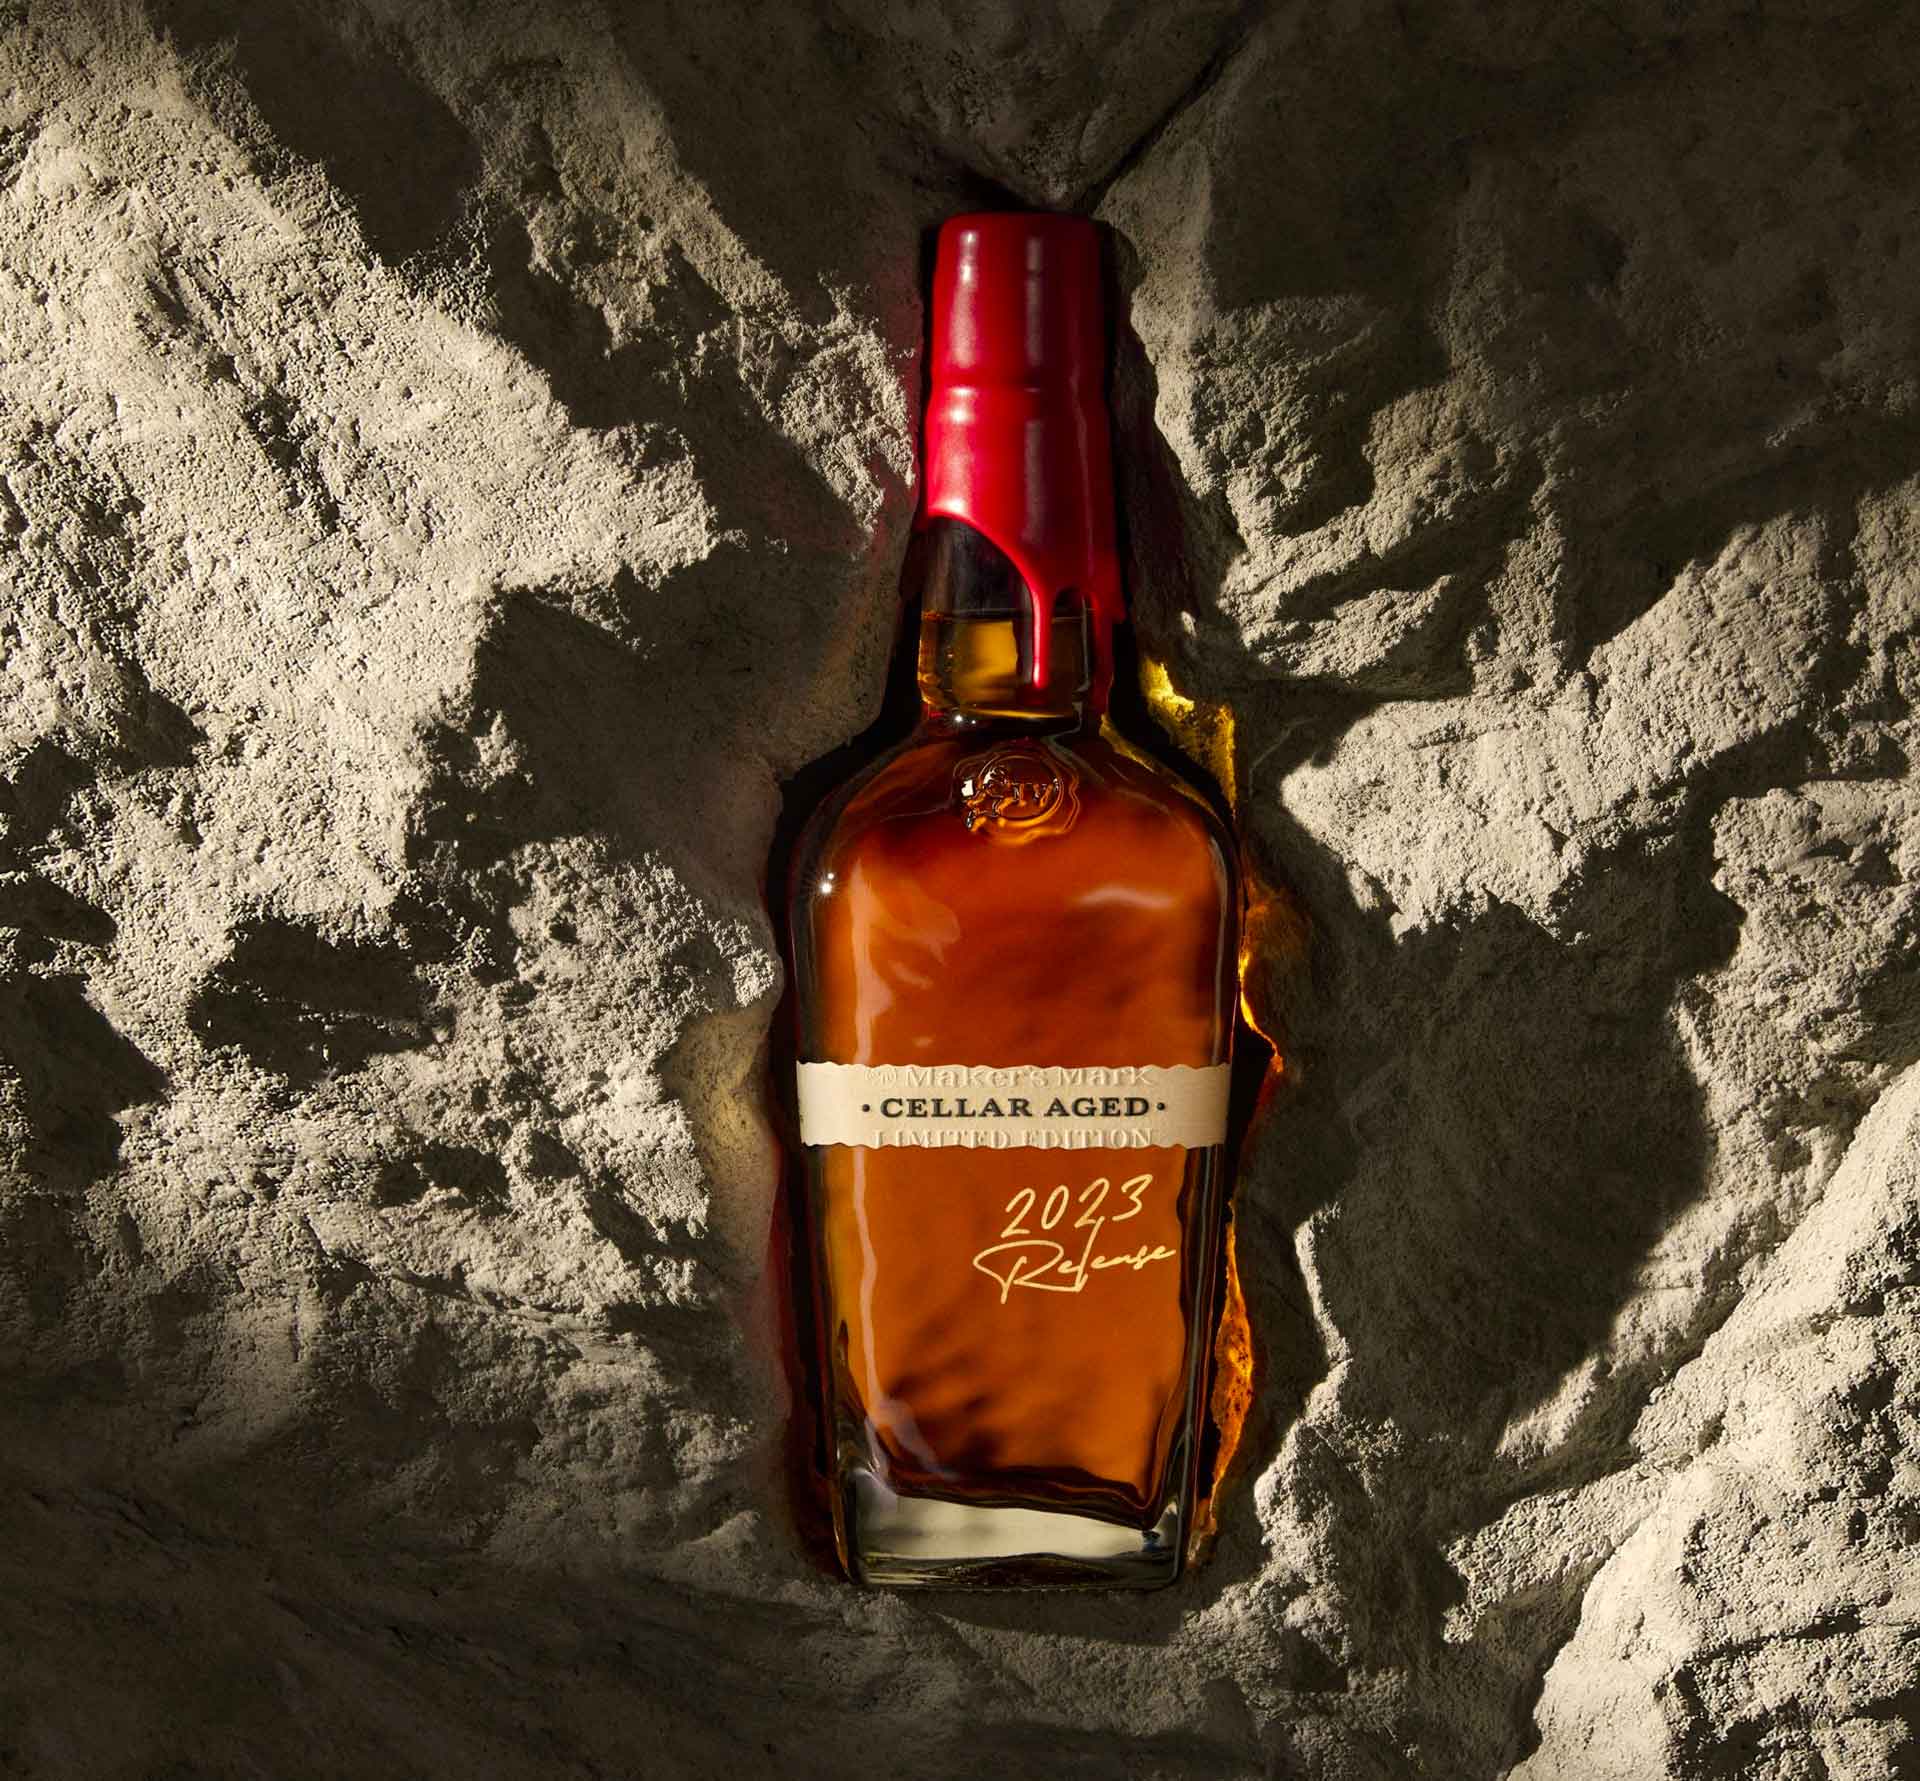 The Core Bottles Of Maker's Mark Bourbon Whisky, Ranked